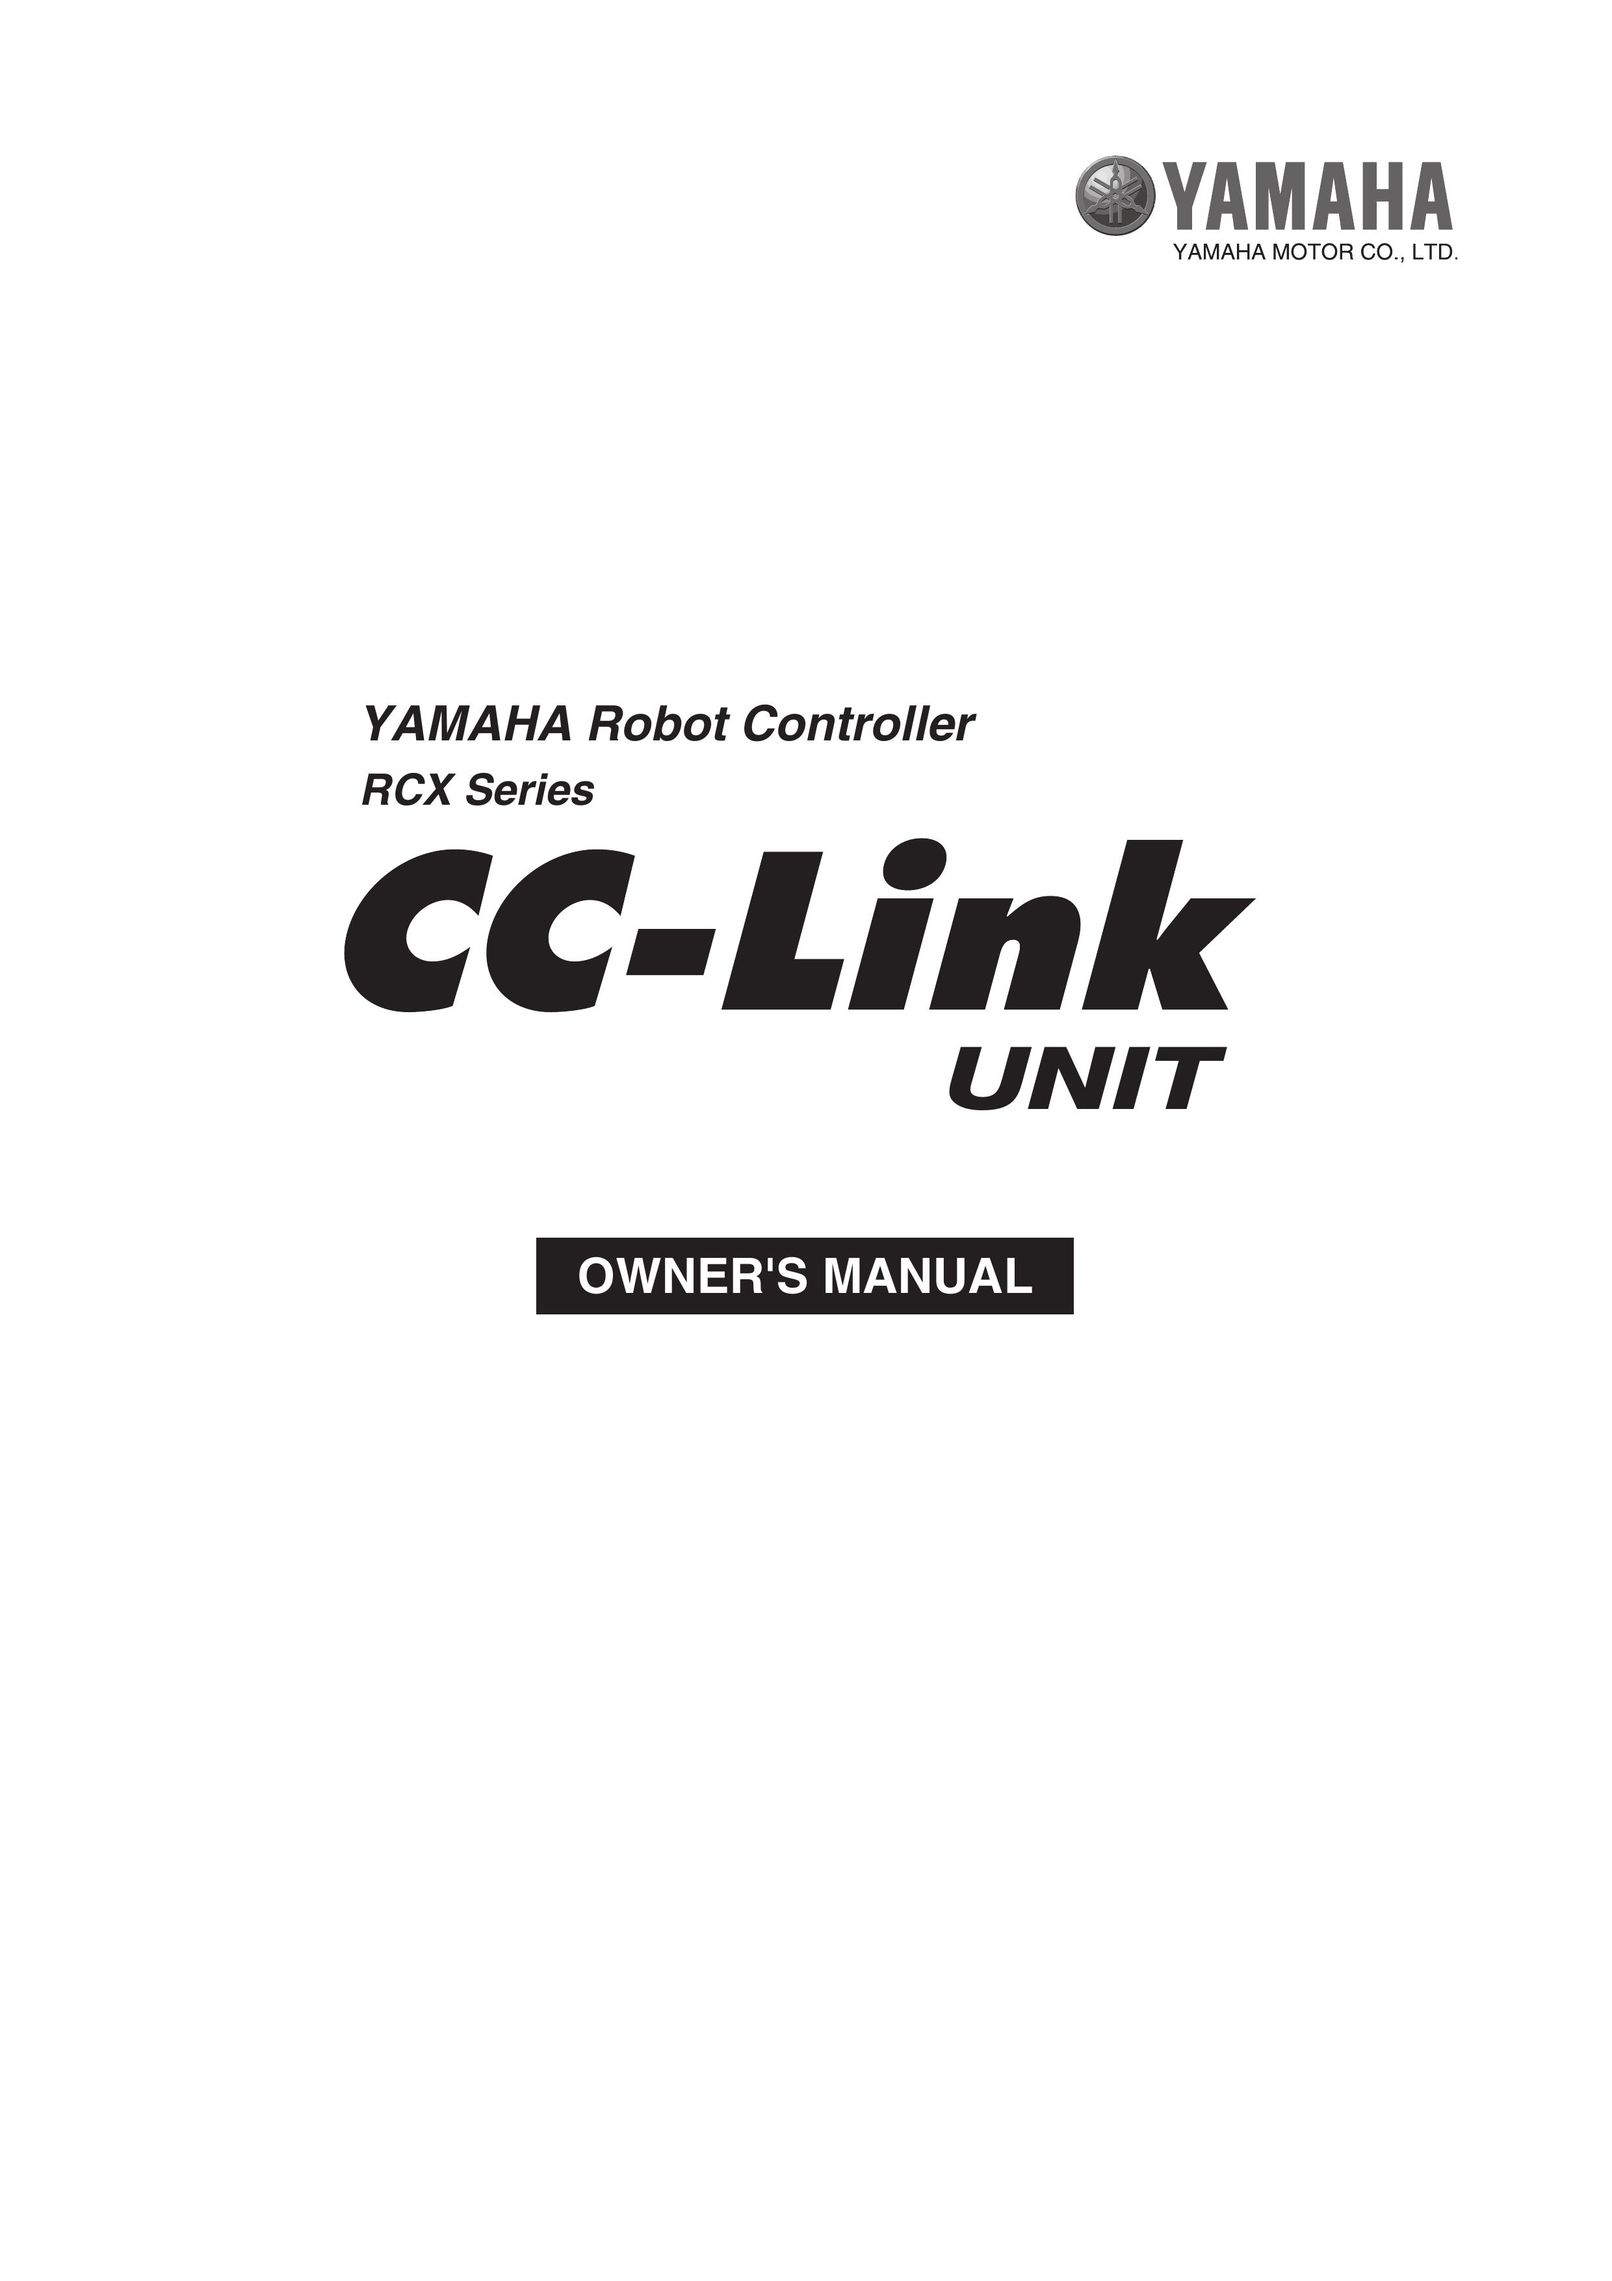 Yamaha Yamaha Robot Controller CC-Link Unit Robotics User Manual